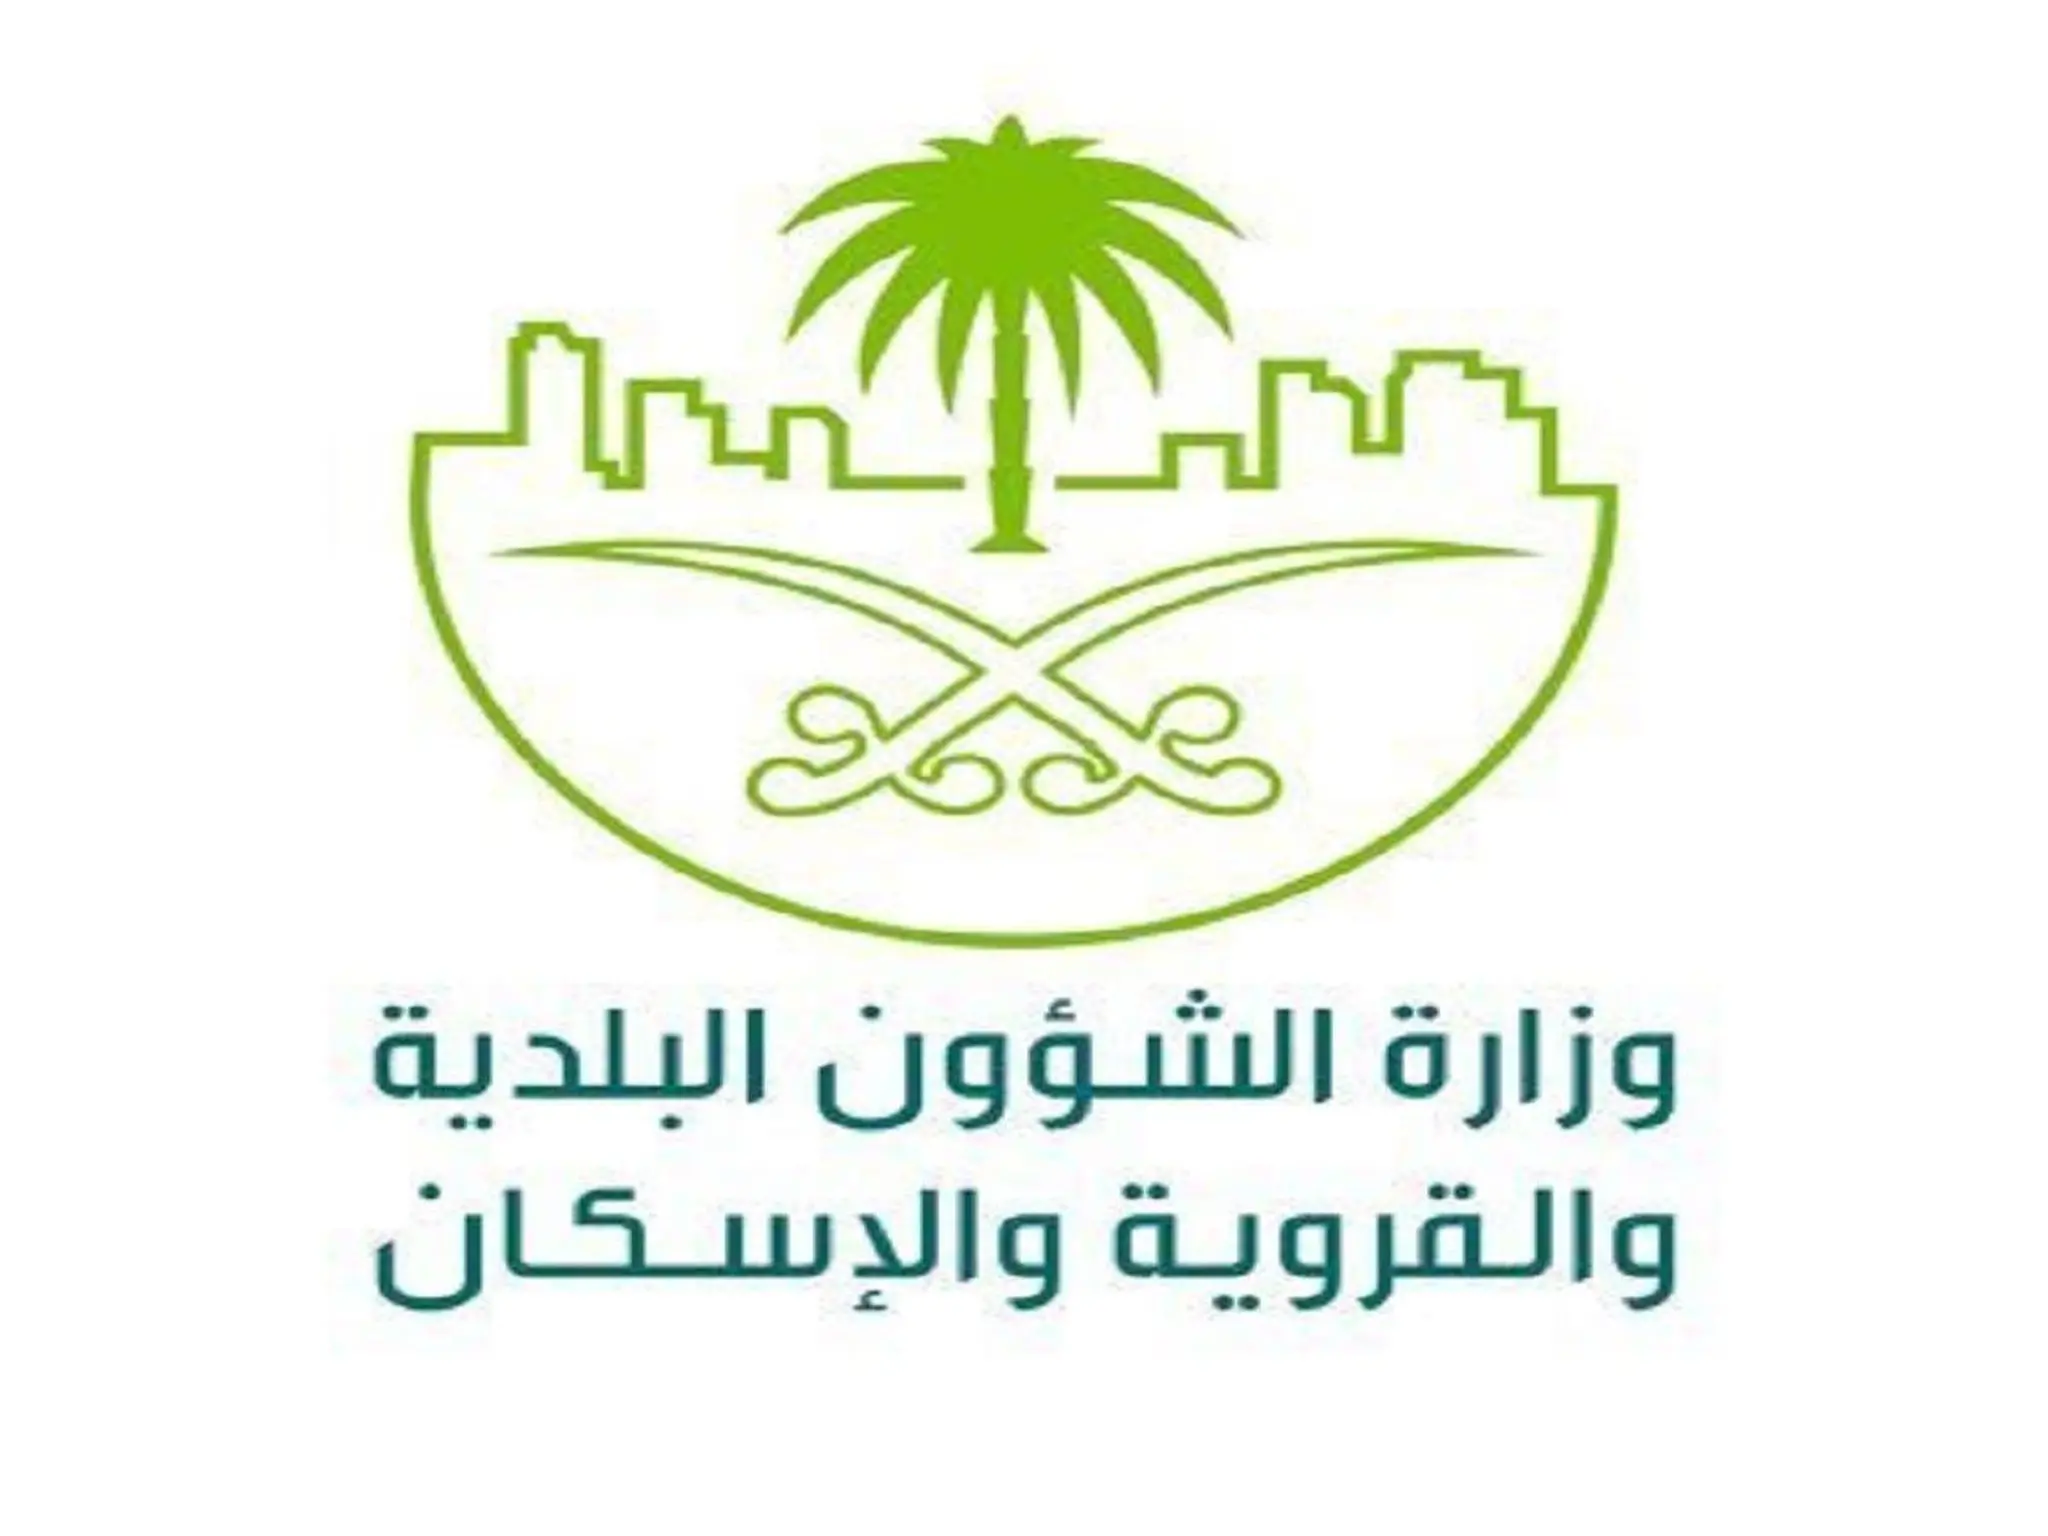 وزارة الشؤون البلدية بالسعودية تتخذ خطوات حثيثة لتنمية مدن المملكة